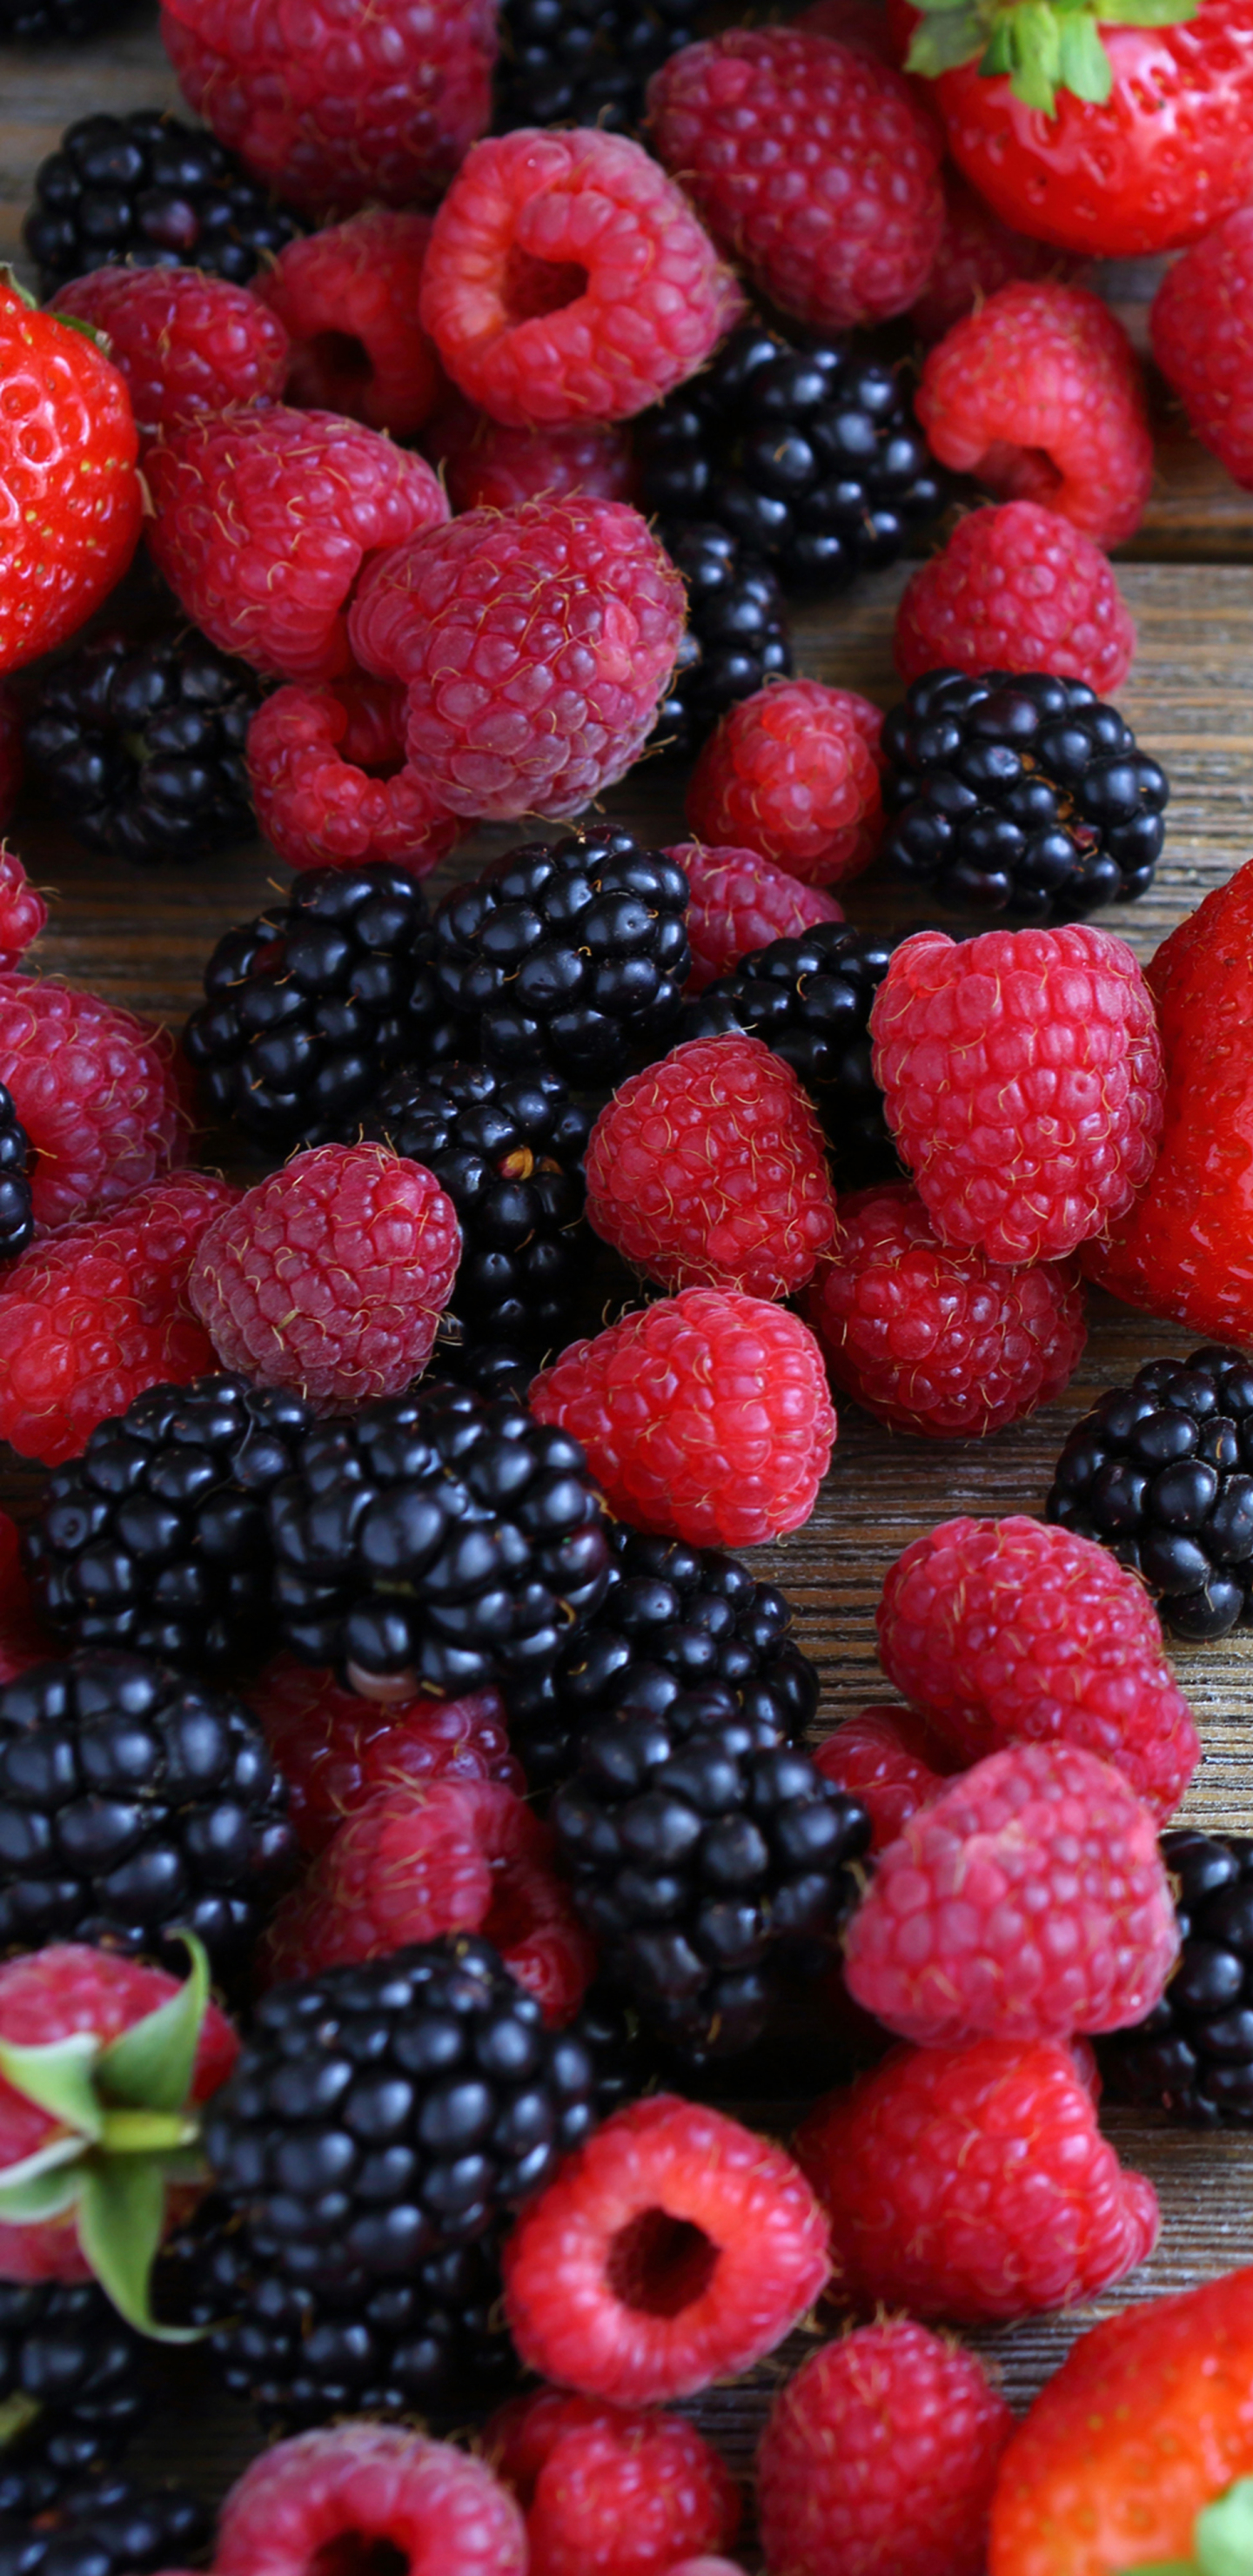 1323167 免費下載壁紙 食物, 浆果, 覆盆子, 树莓, 草莓, 黑莓 屏保和圖片